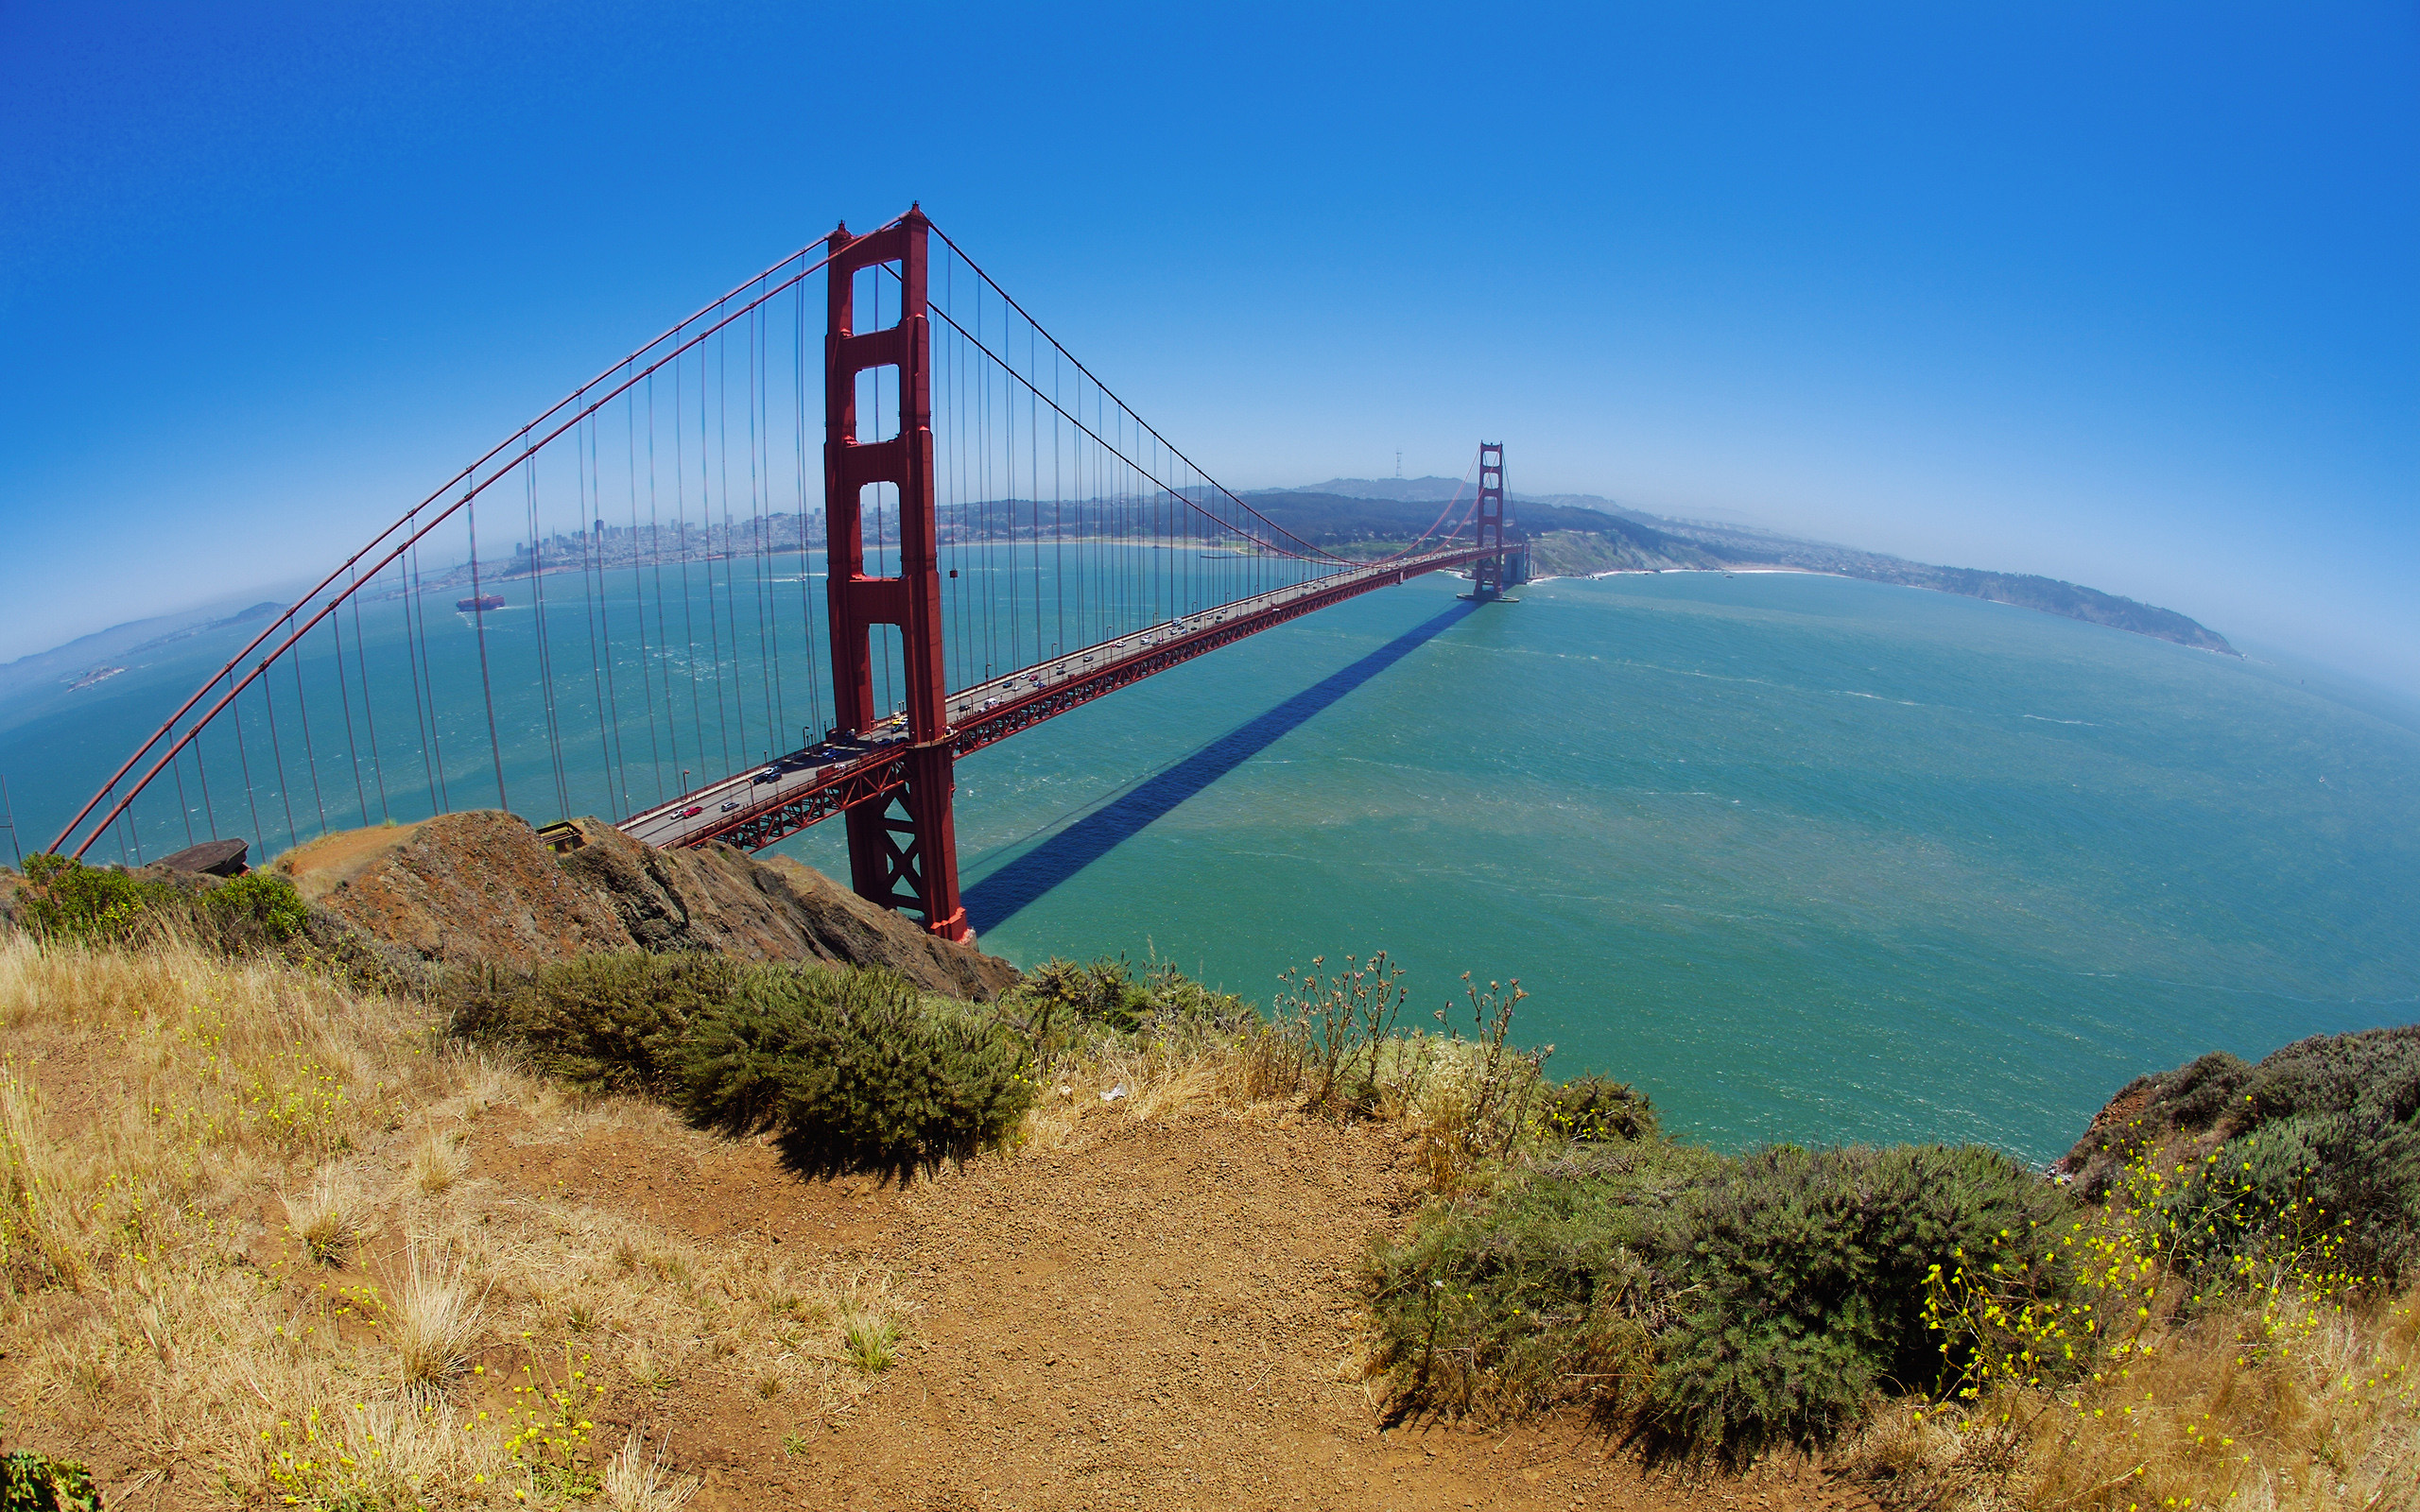 мосты, Мост Золотые Ворота, Сан - Франциско, Тихий океан - обои на рабочий стол